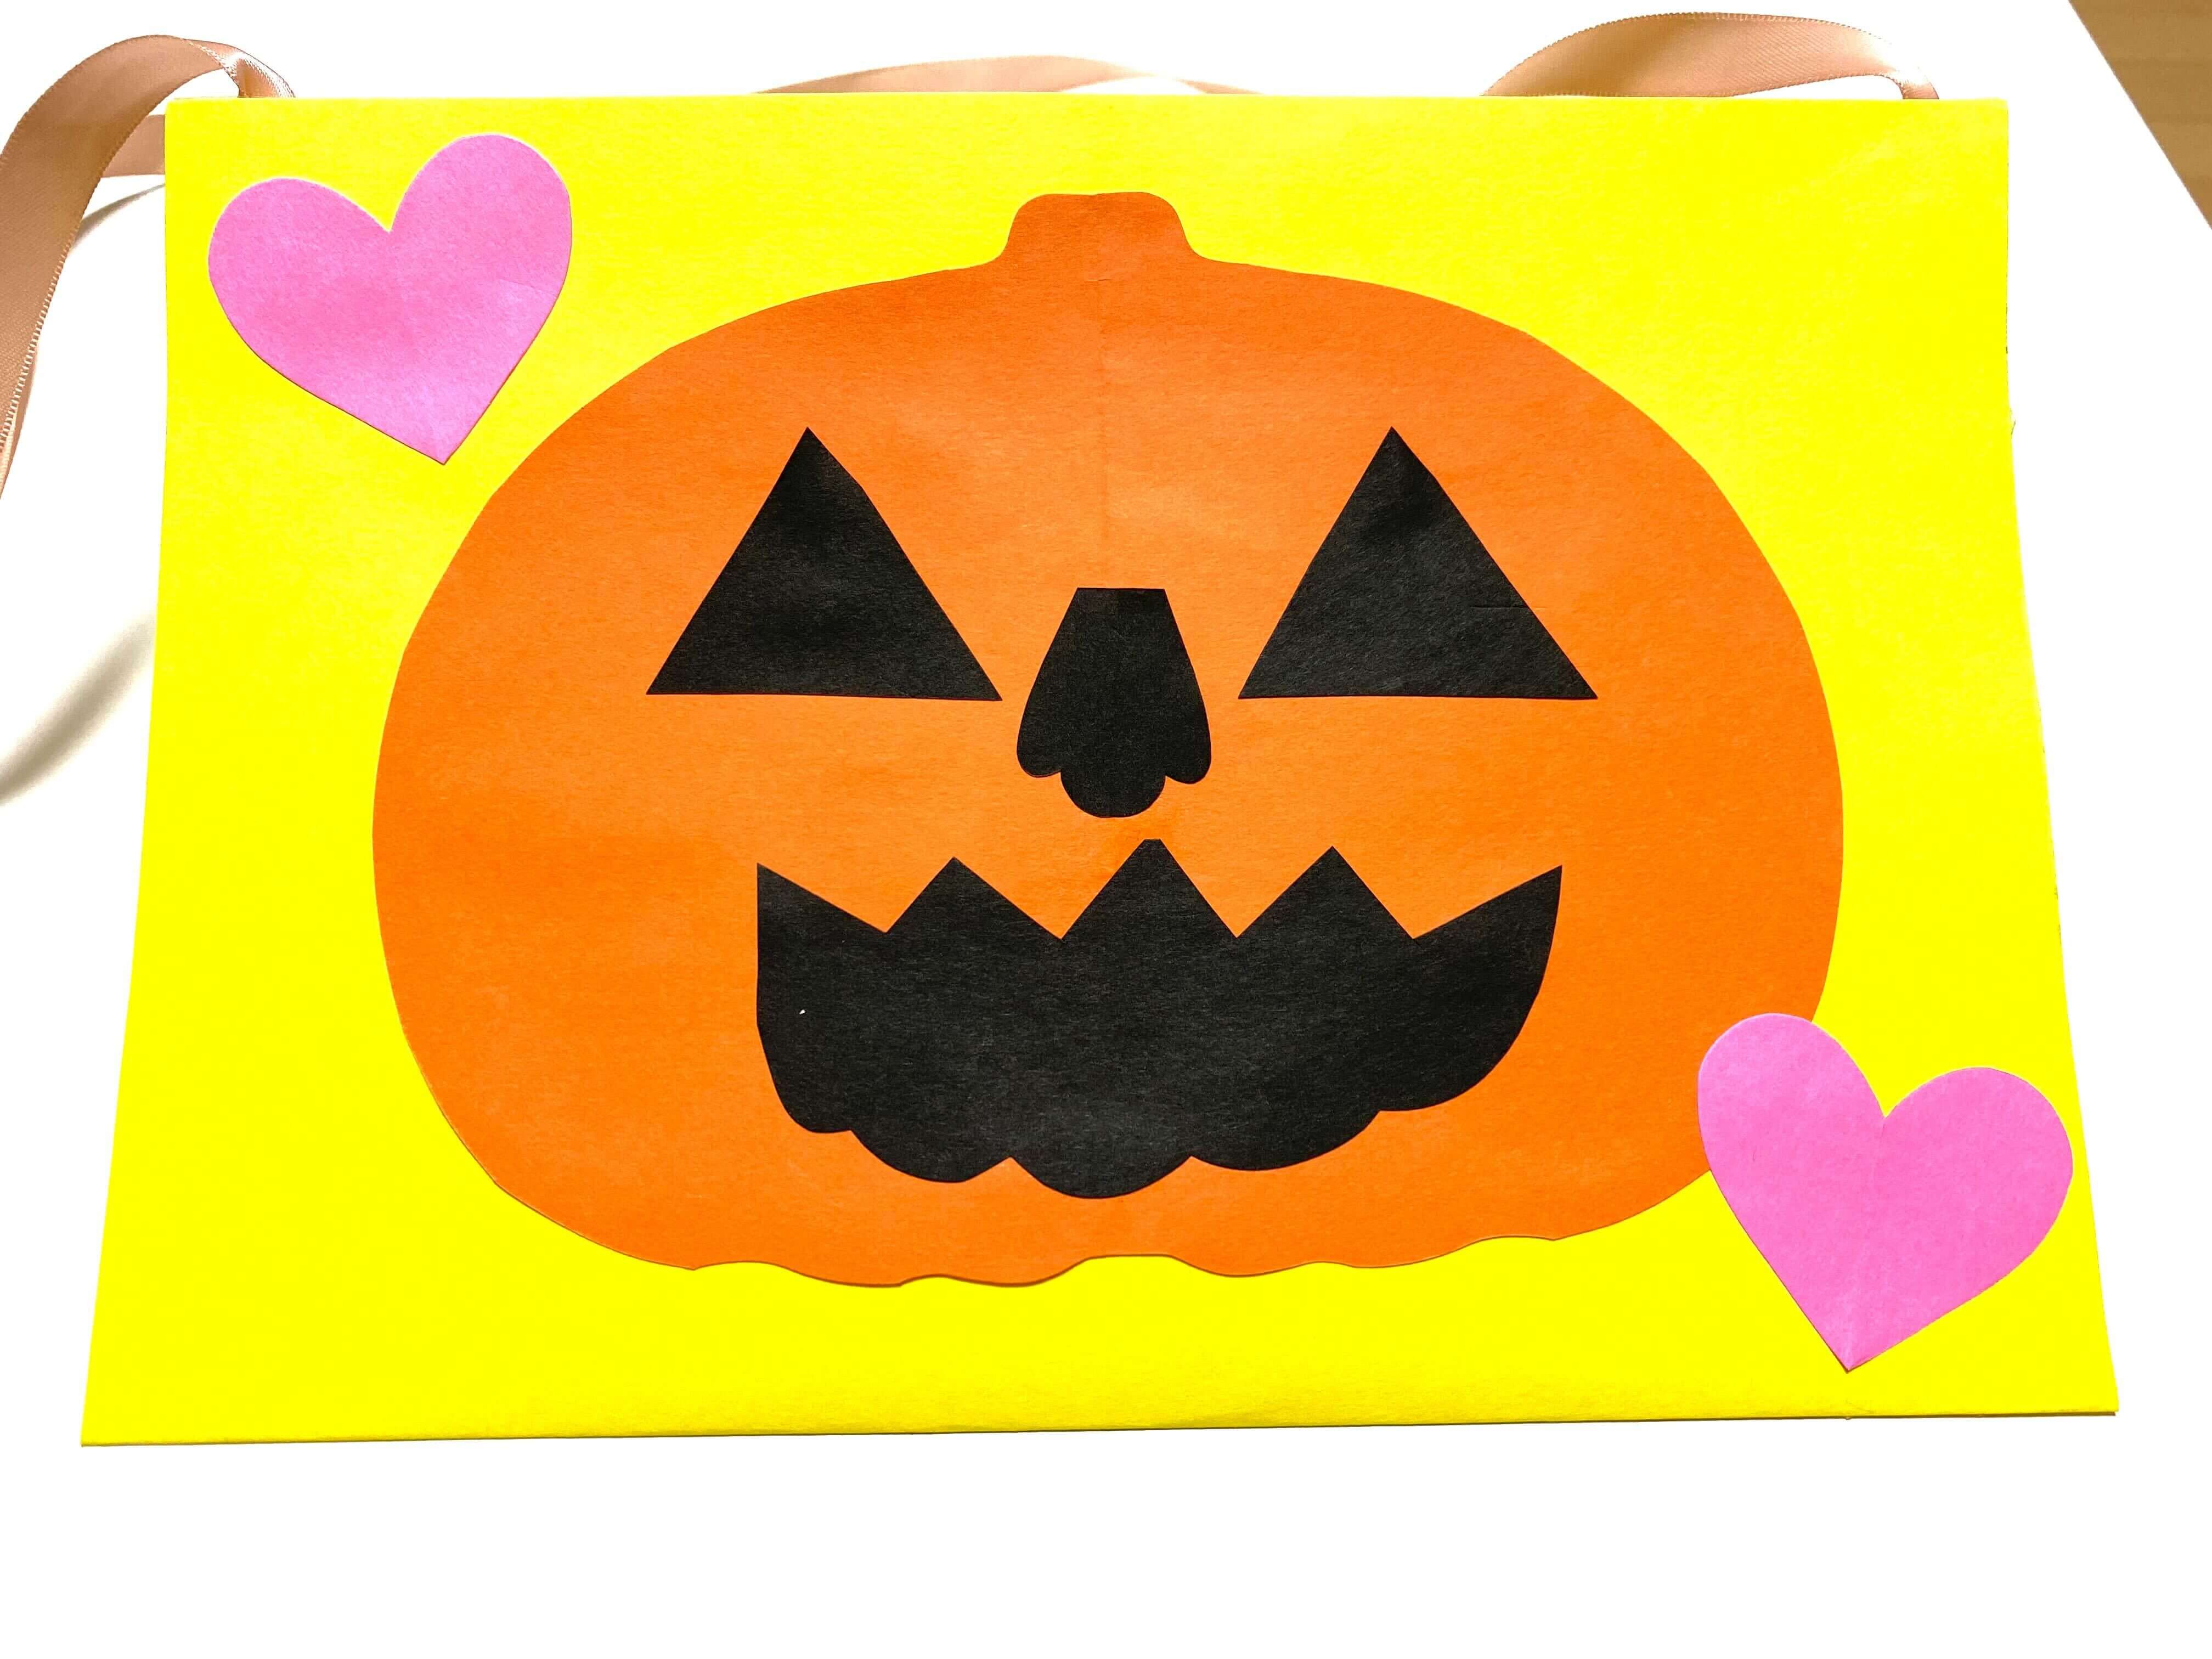 ハロウィン製作ー簡単バッグ お菓子入れ 画用紙で年齢別アレンジ紹介 ー